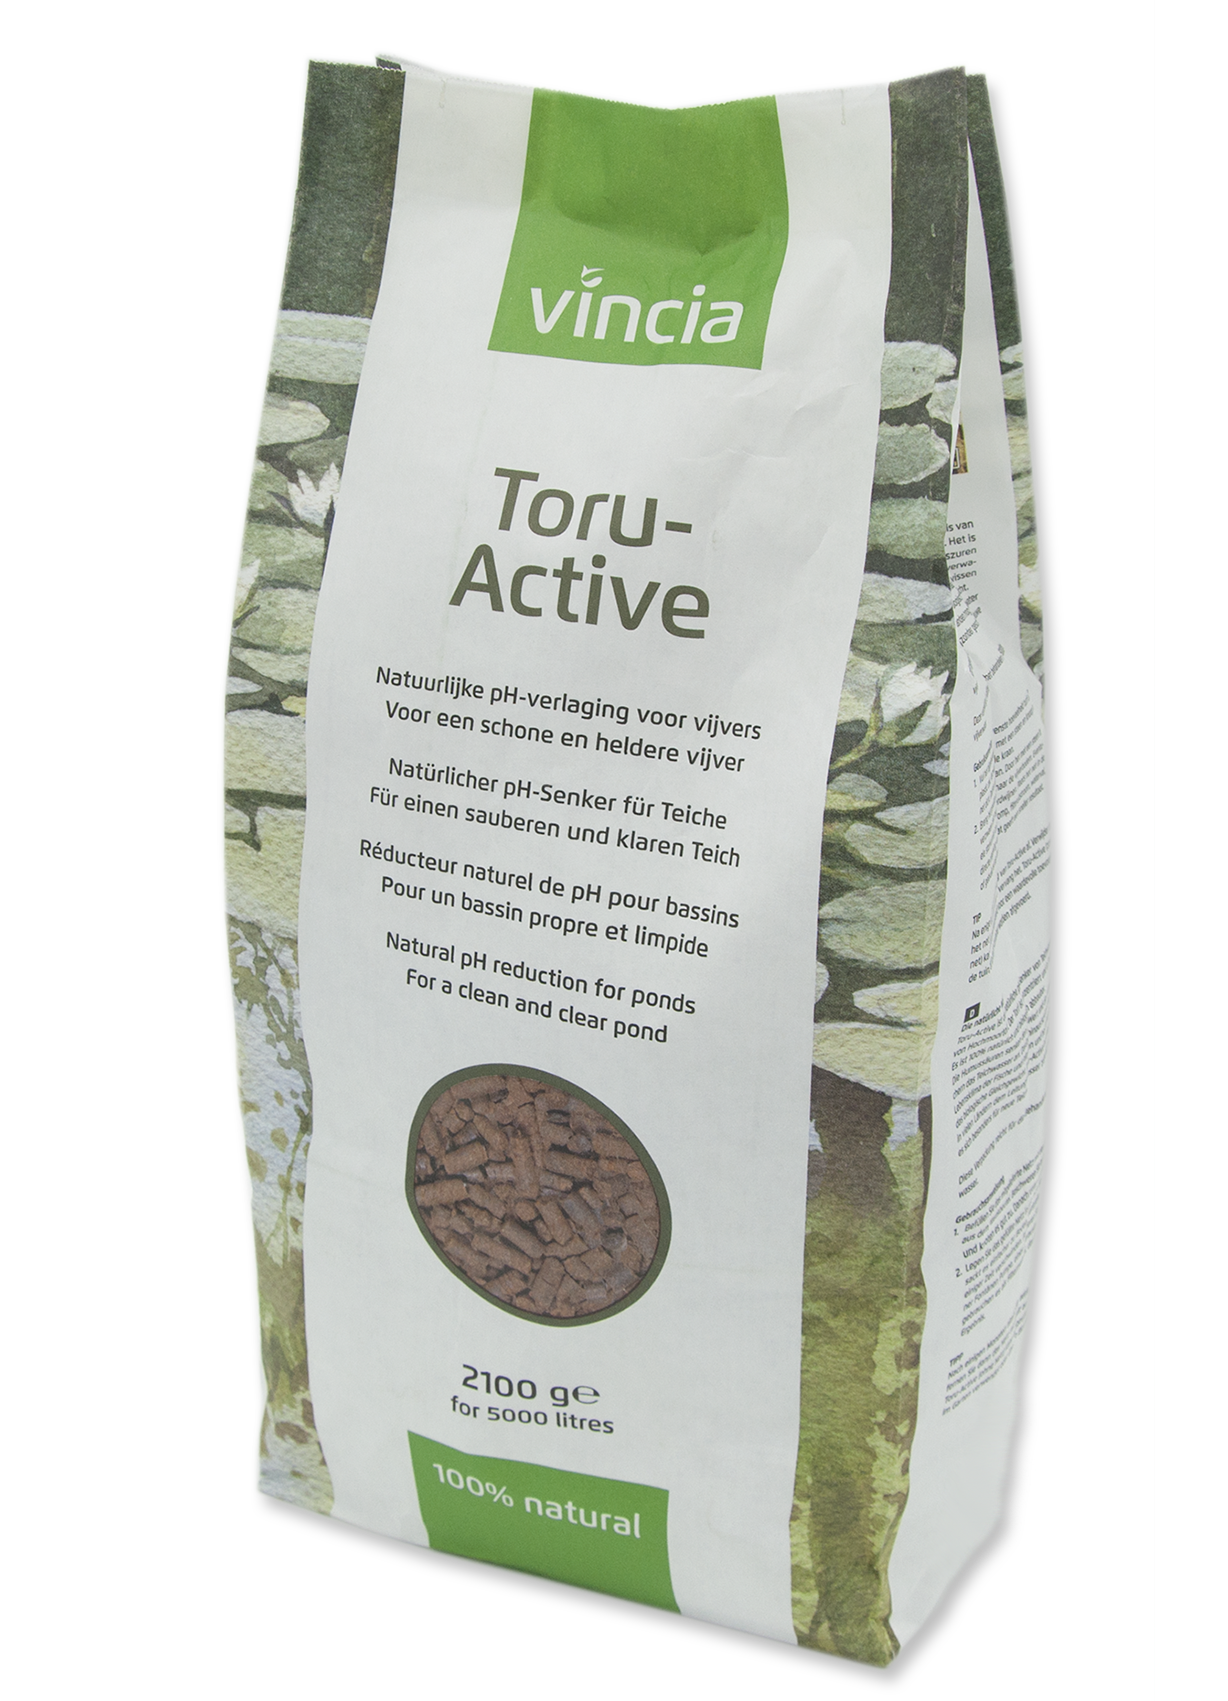 Vincia Toru-Active 2100 g